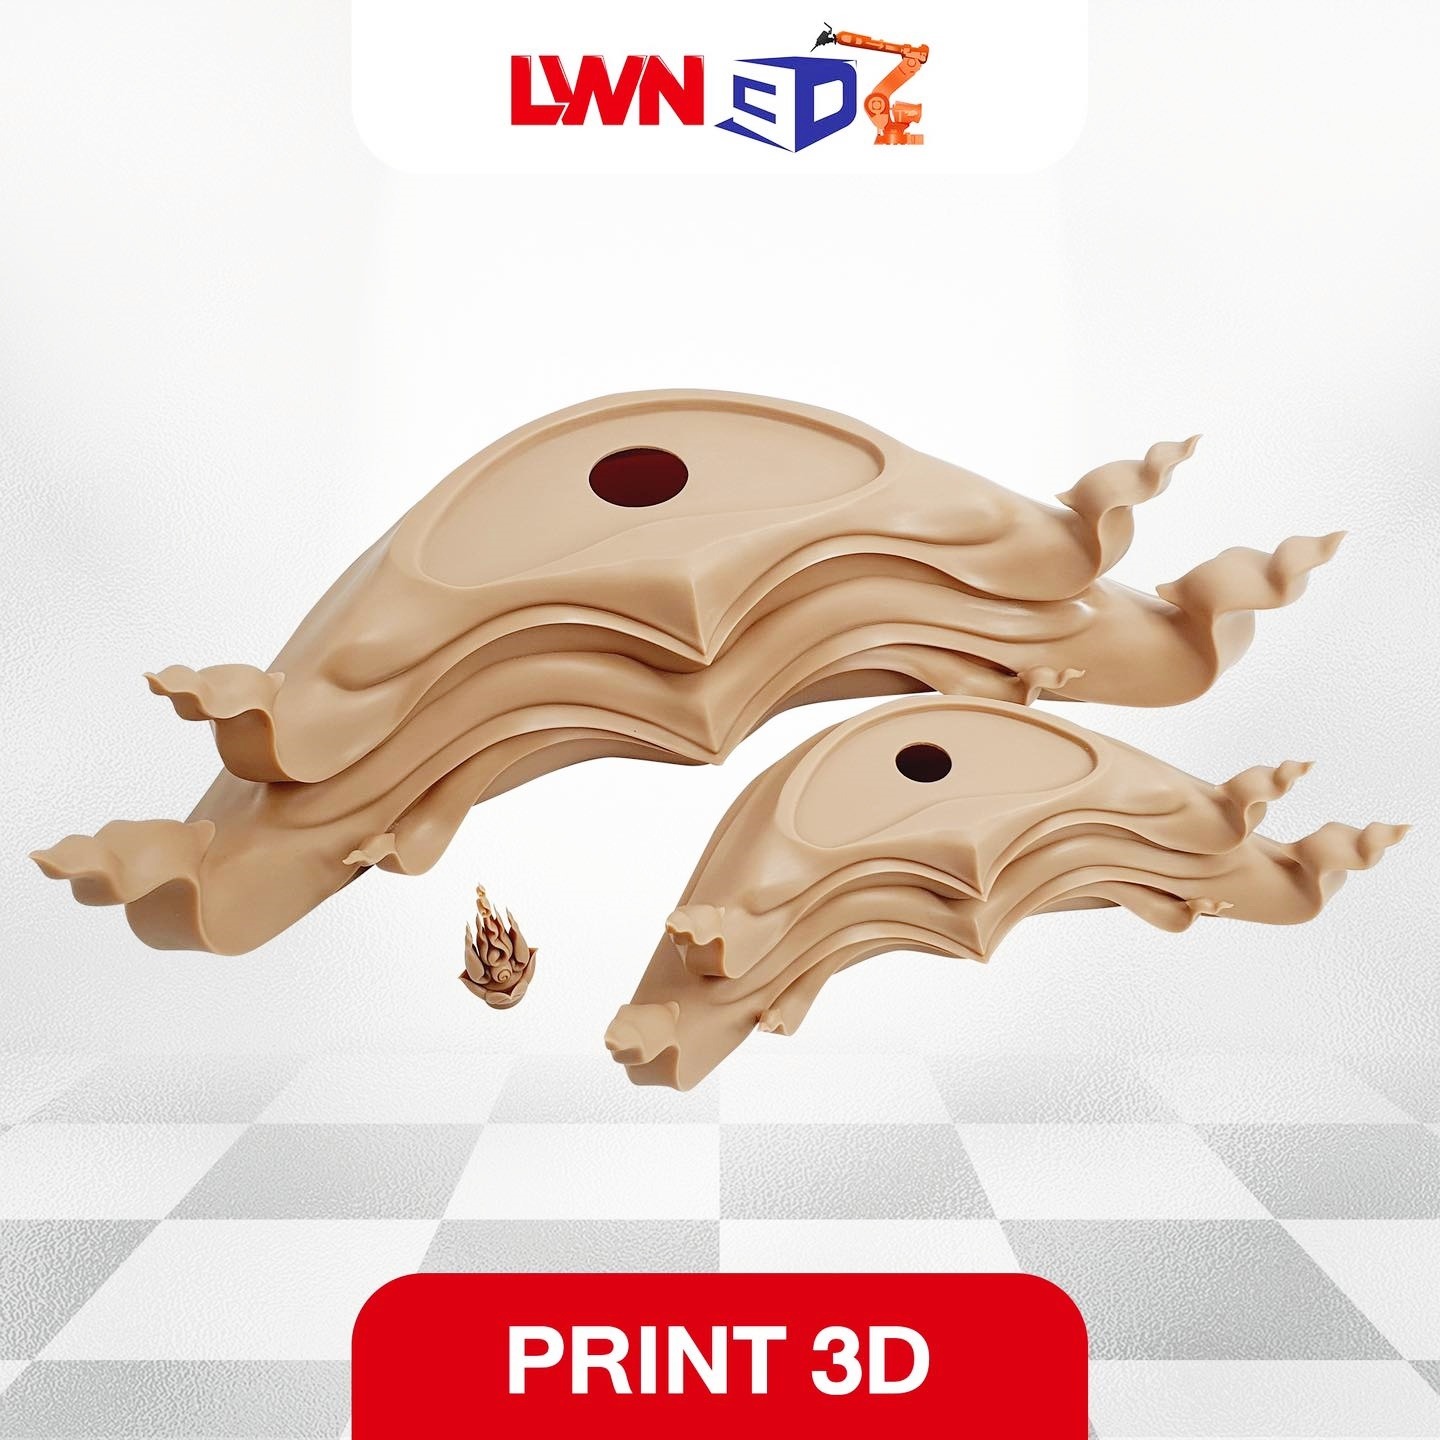 รับขึ้นรูปวัตถุ พิมพ์ 3D ตามแบบ สมุทรสาคร